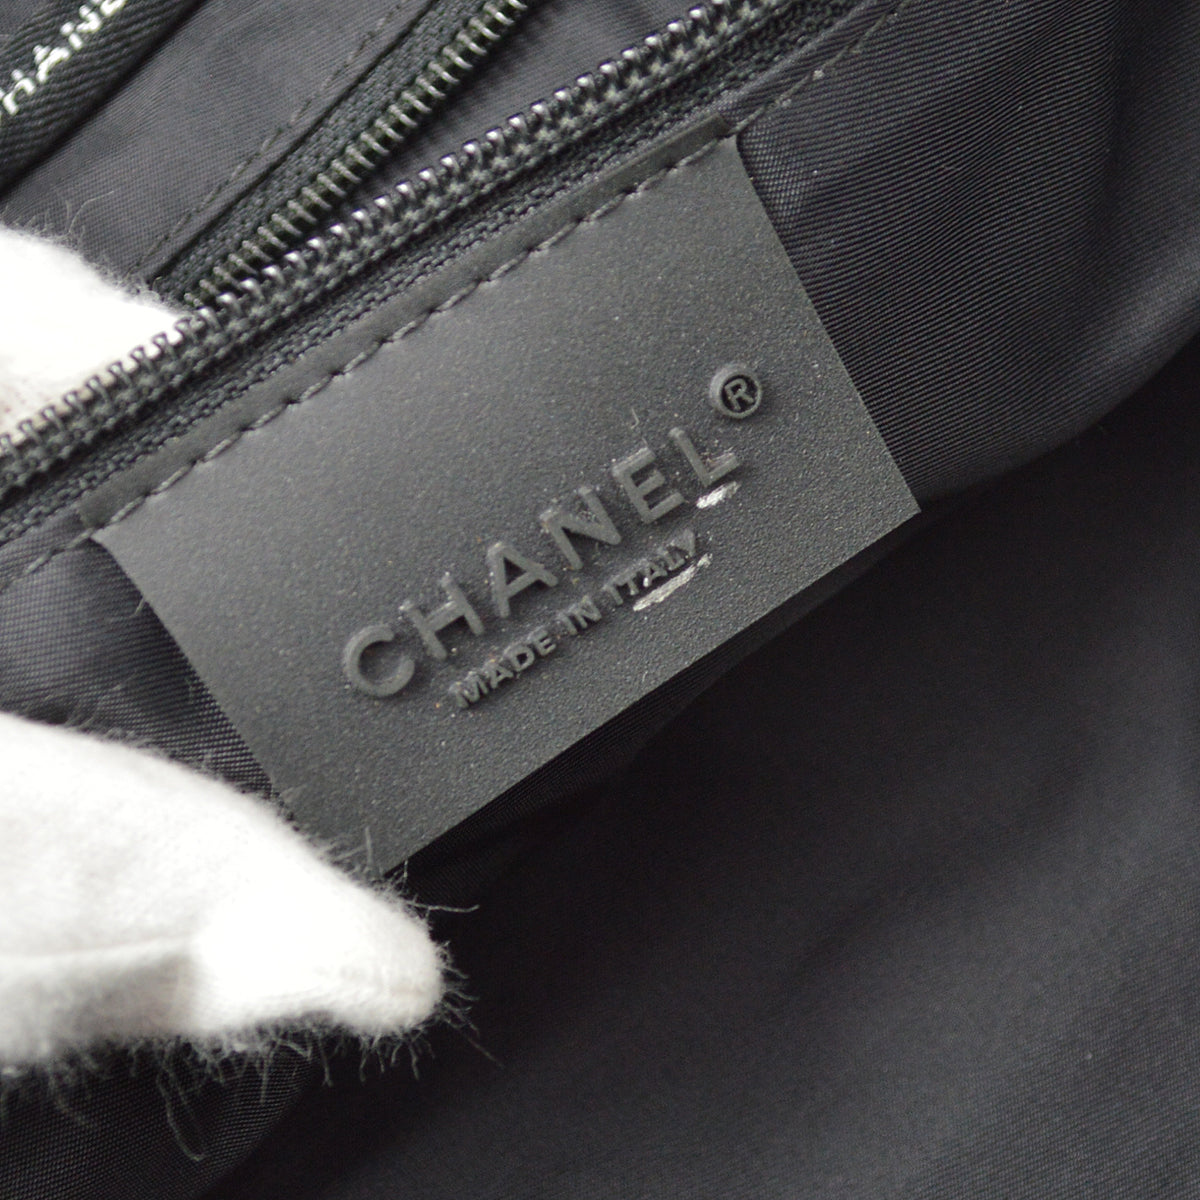 Chanel 黑色毛氈運動系列行李箱健身包